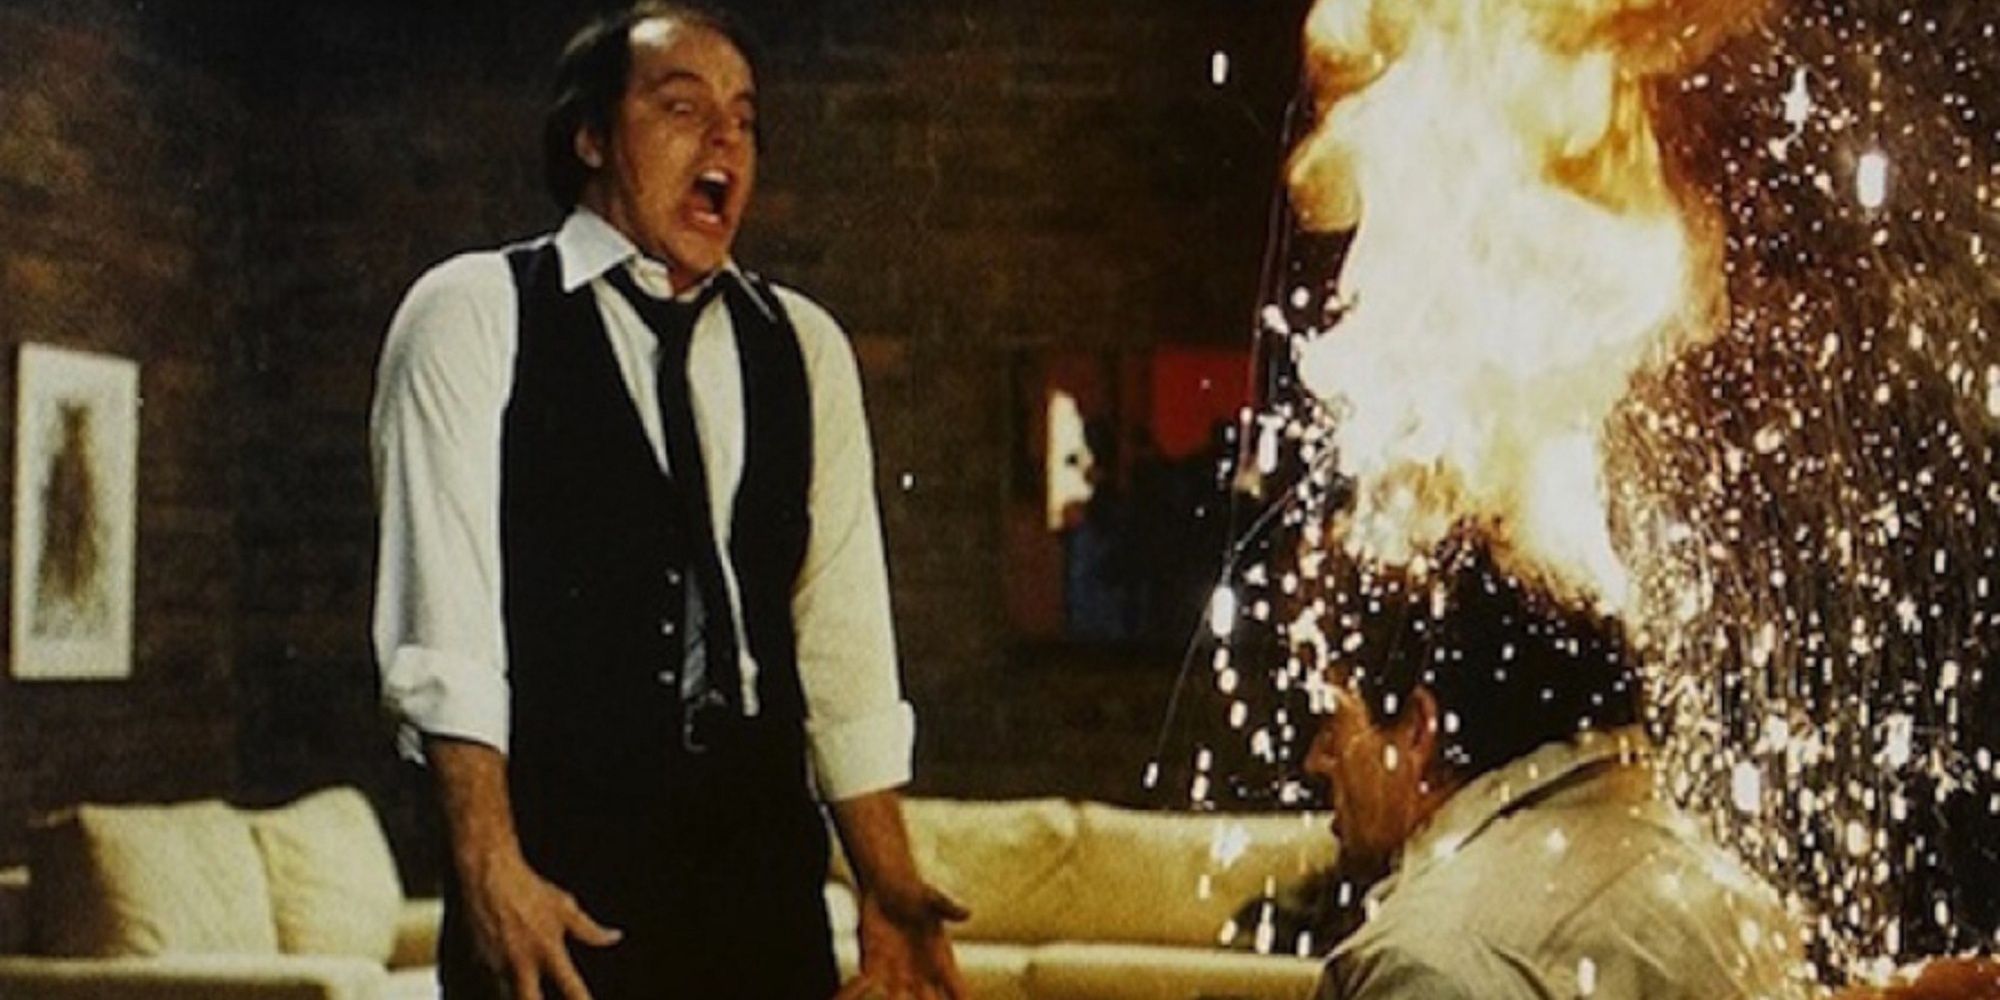 A man's head on fire after telekinetic abilities in 'Scanners.'